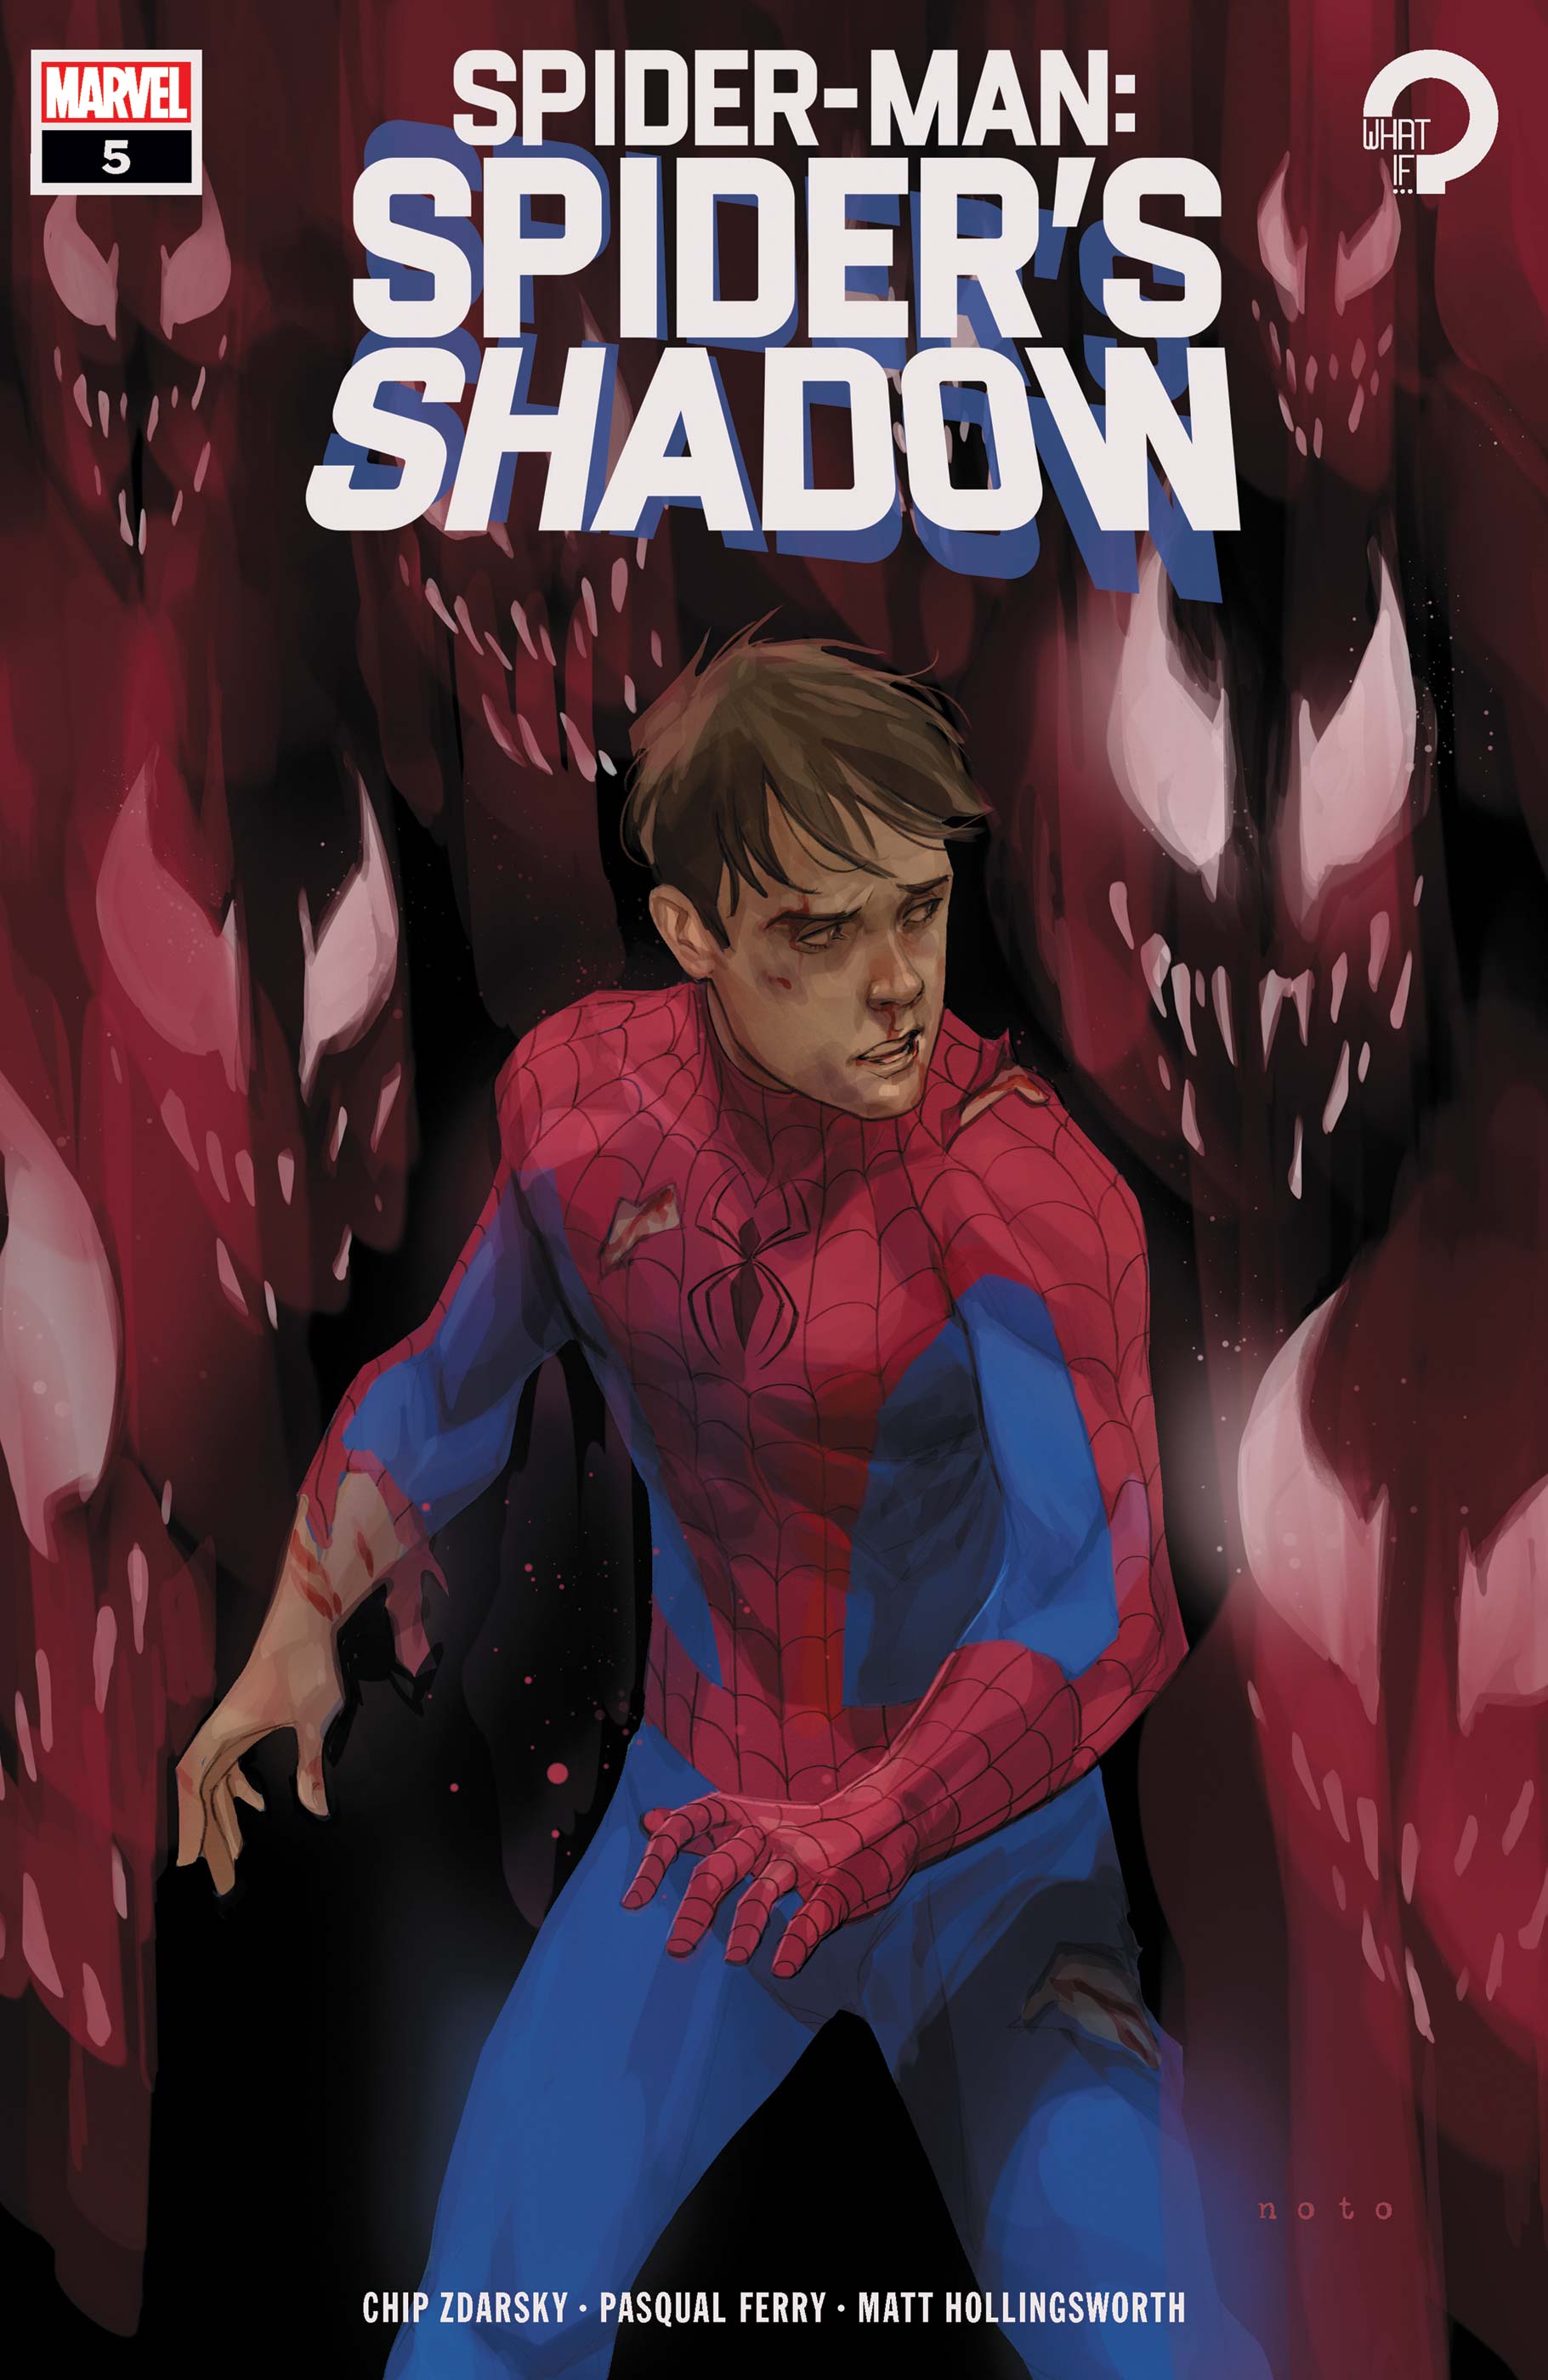 Spider-Man: Spider’s Shadow (2021) #5